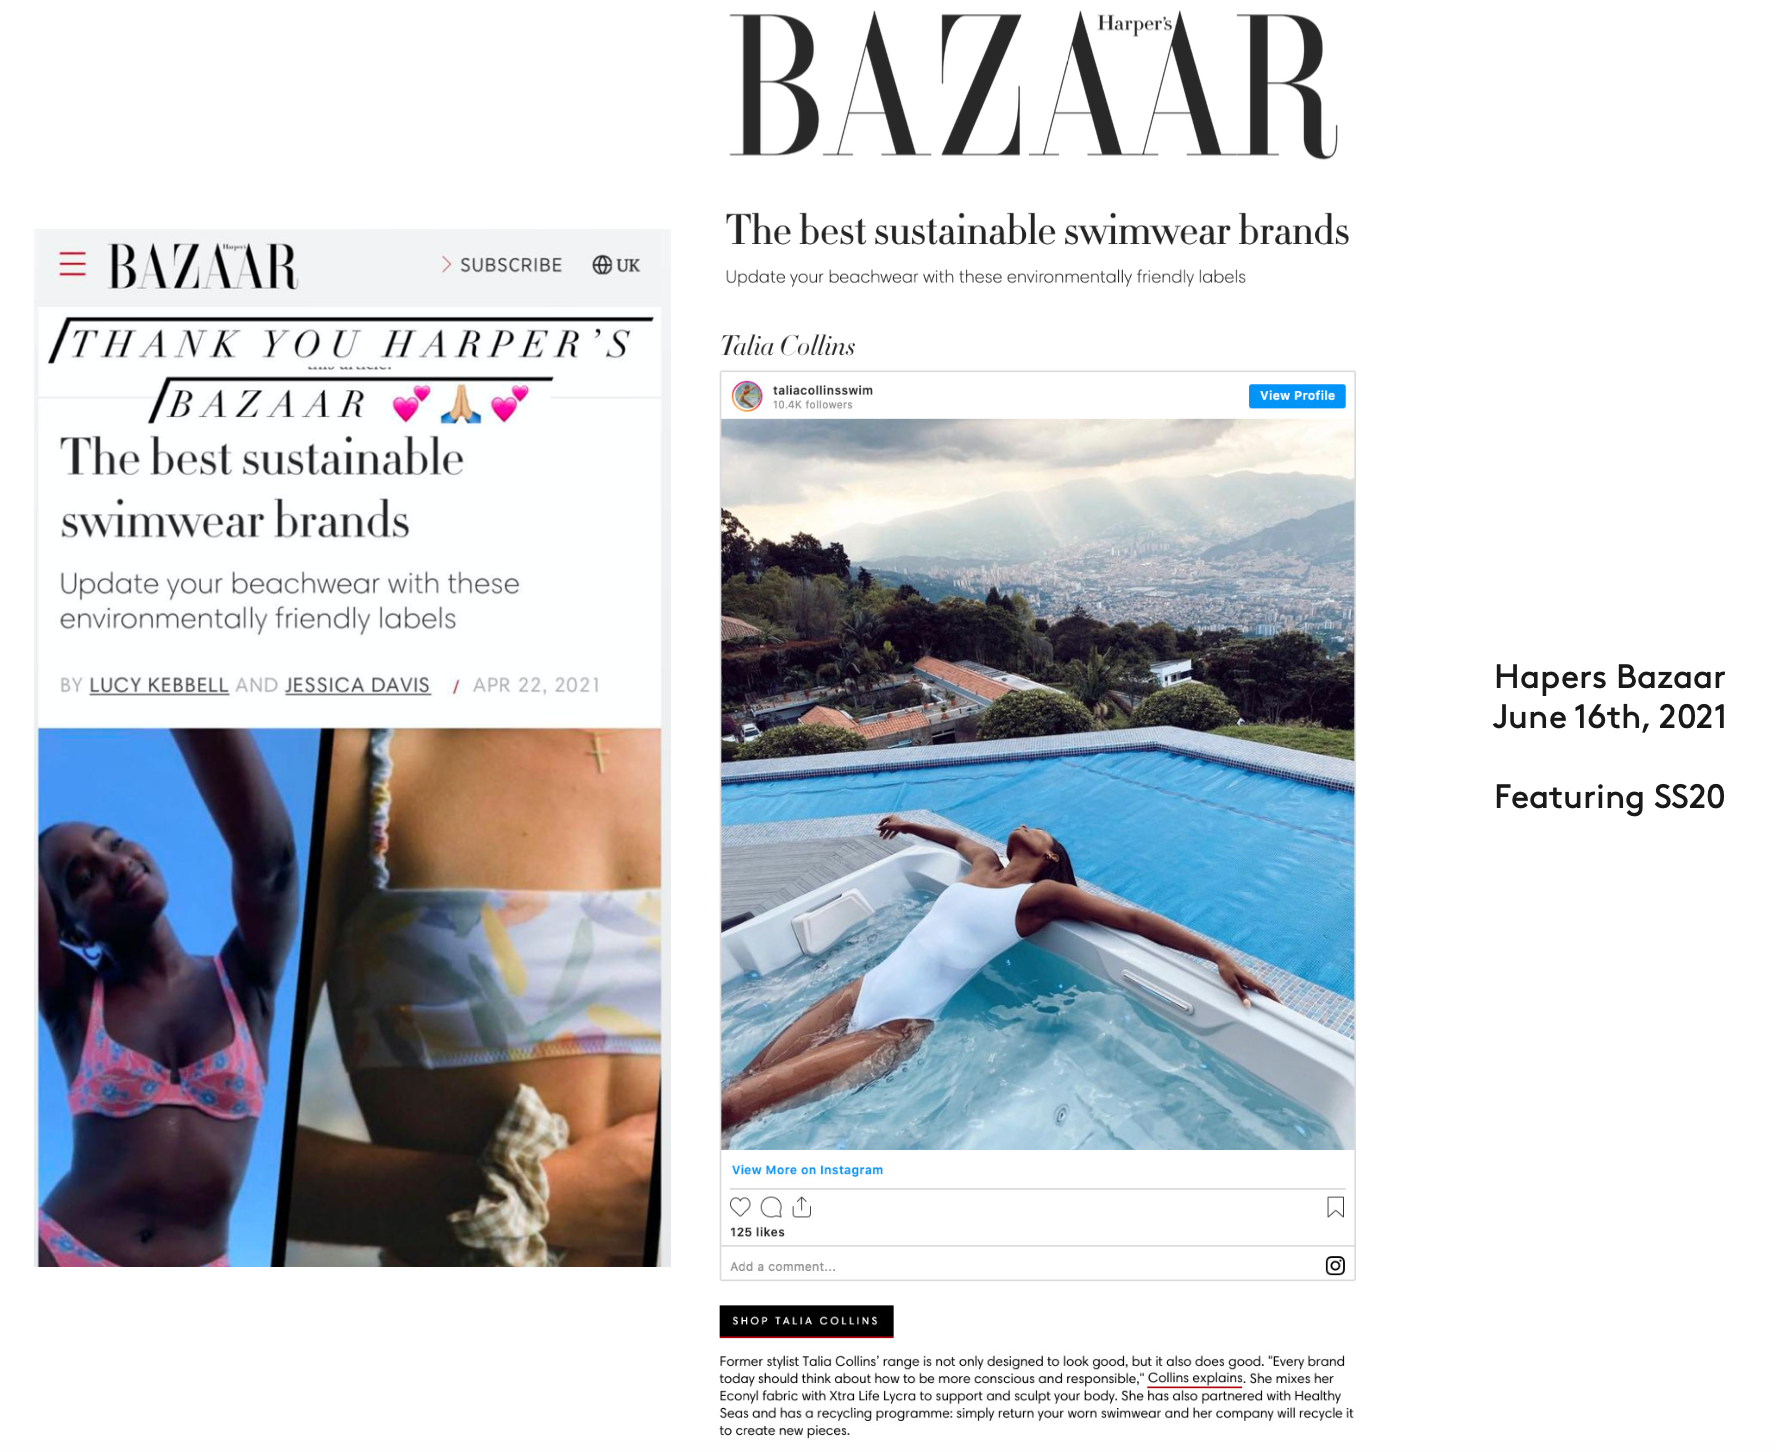 Harper's Bazaar, June 2021